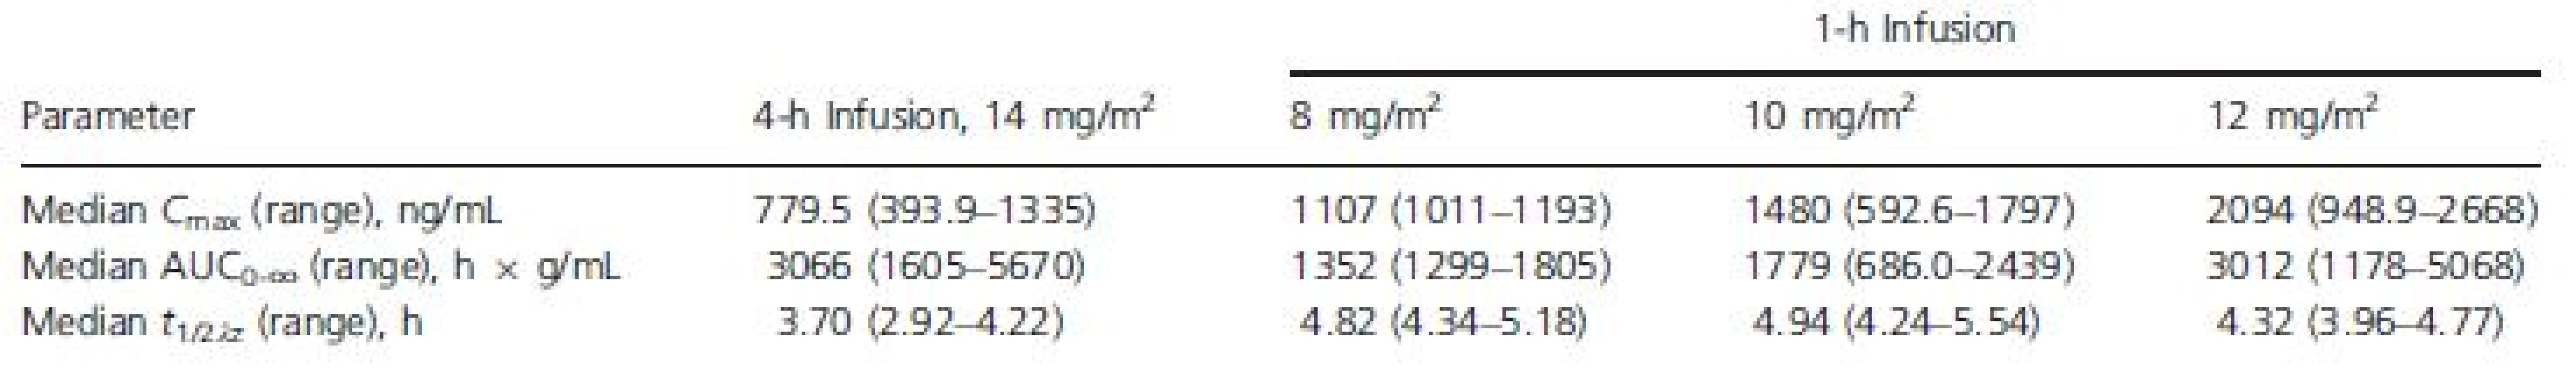 Romidepsin pharmacokinetic parameters by dose regimen